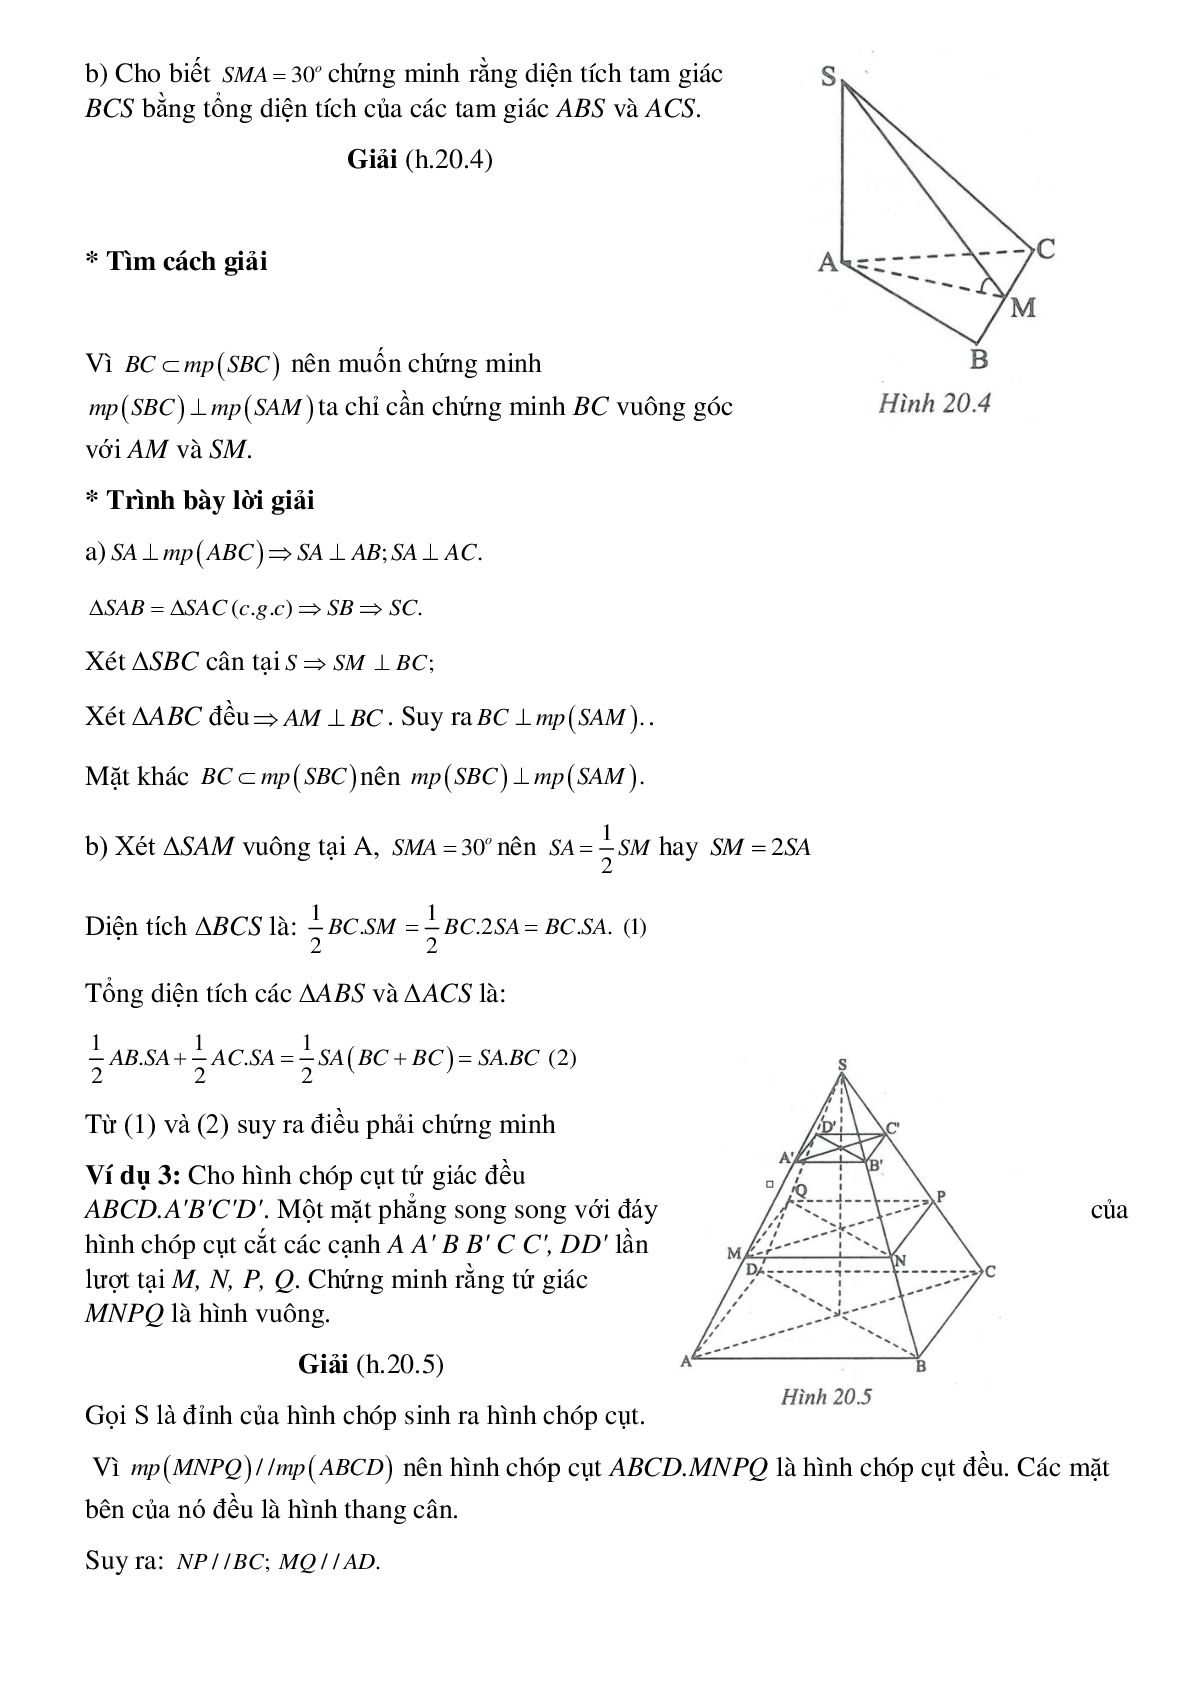 Hình chóp đều - Hình học toán 8 (trang 3)